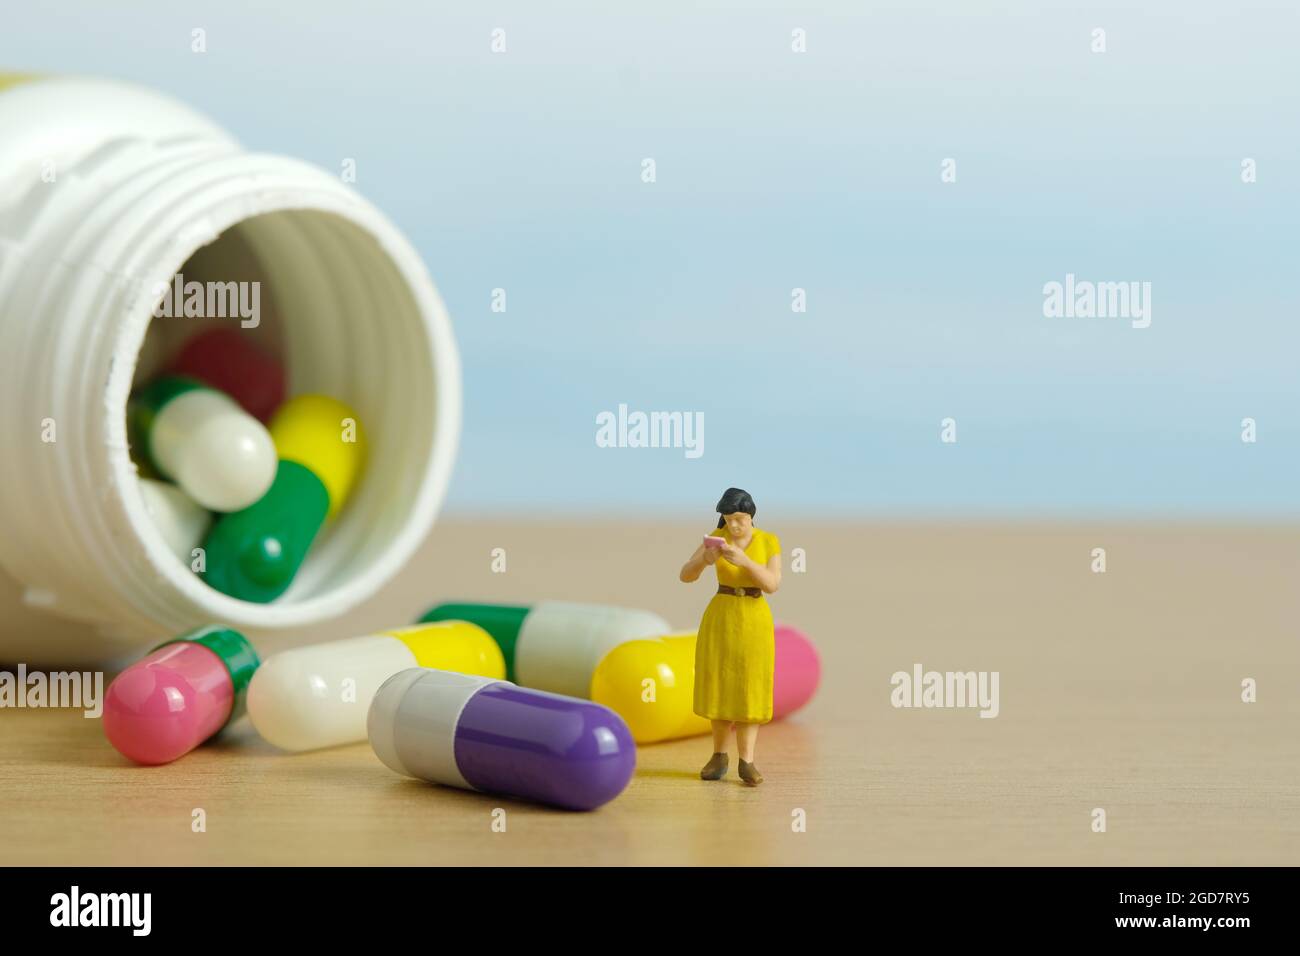 Miniatur Menschen Spielzeug Figur Fotografie. Eine Studentin, die mitten in der Medikamentenpille steht und die Zutat liest. Bildfoto Stockfoto